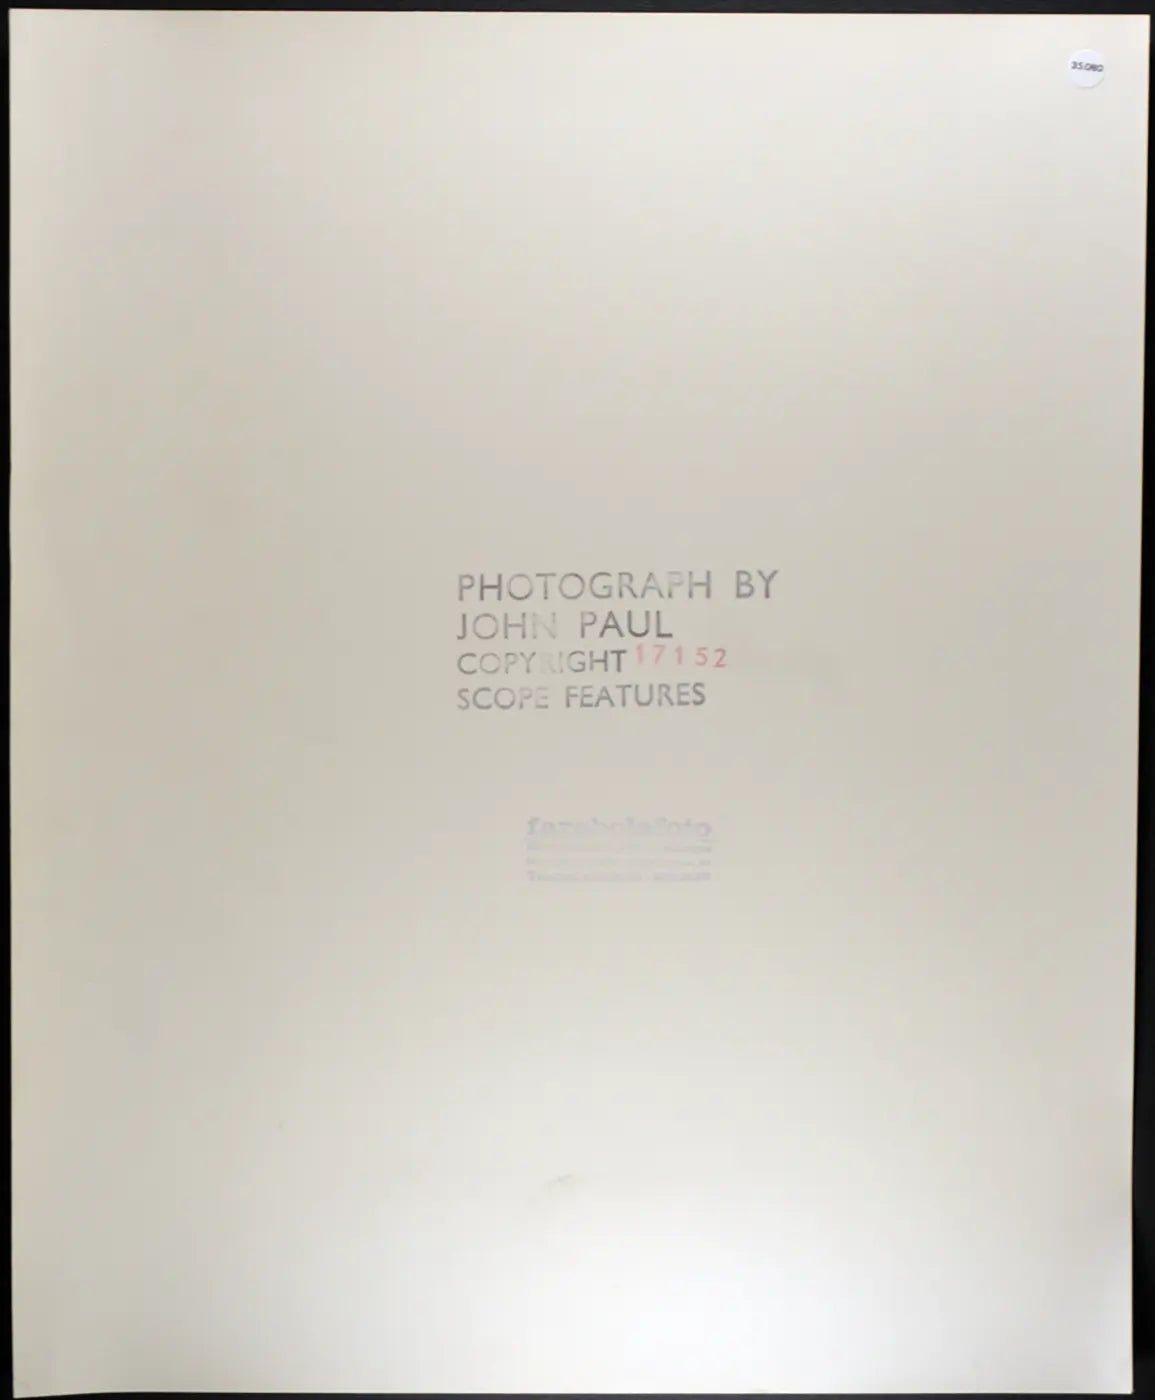 Nicole Picard anni 80 Ft 35080 - Stampa 30x37 cm - Farabola Stampa ai sali d'argento